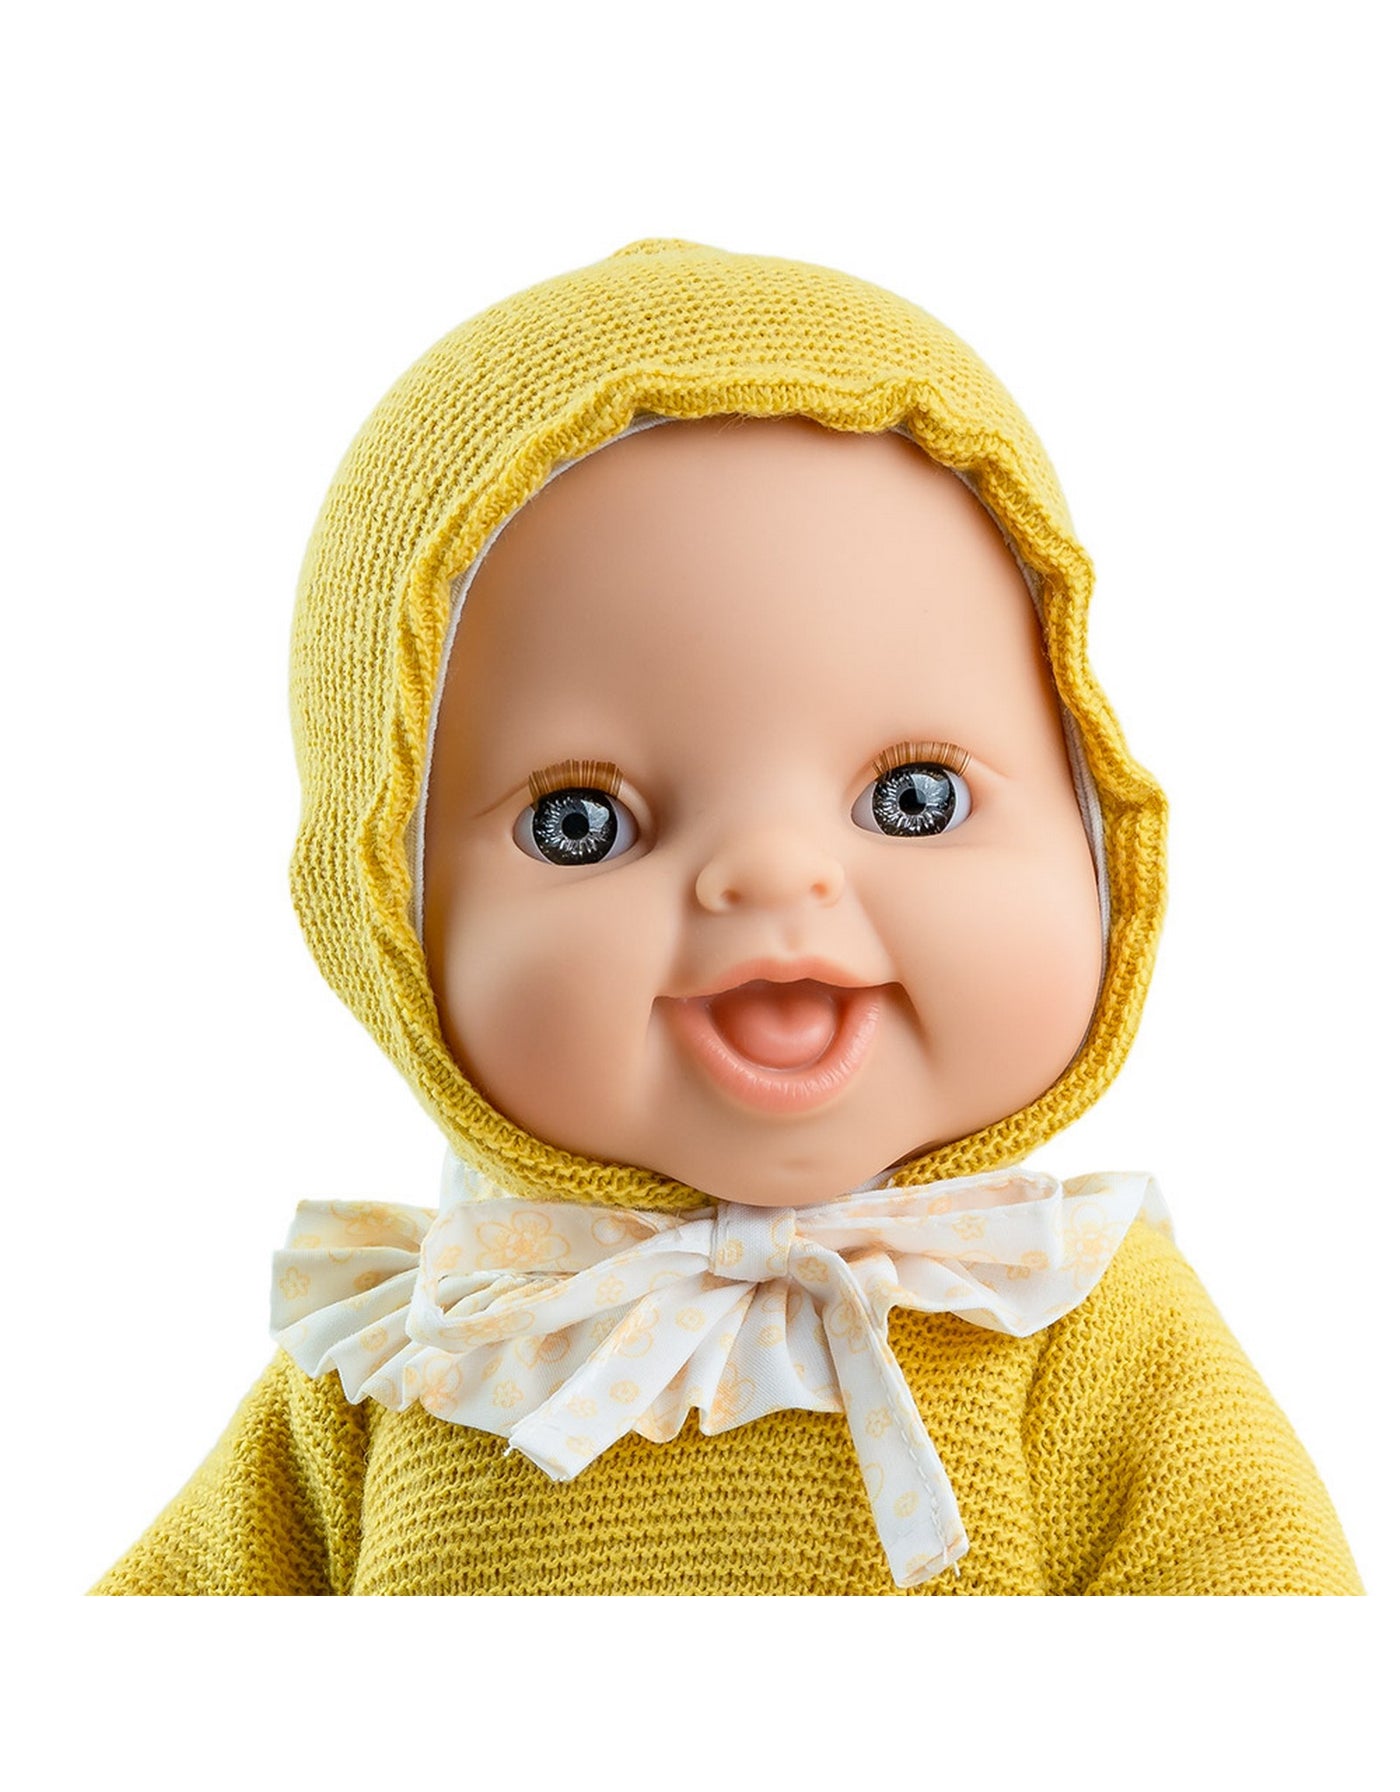 Bébé Gordis - Anik avec chandail et bonnet jaune - Paola Reina